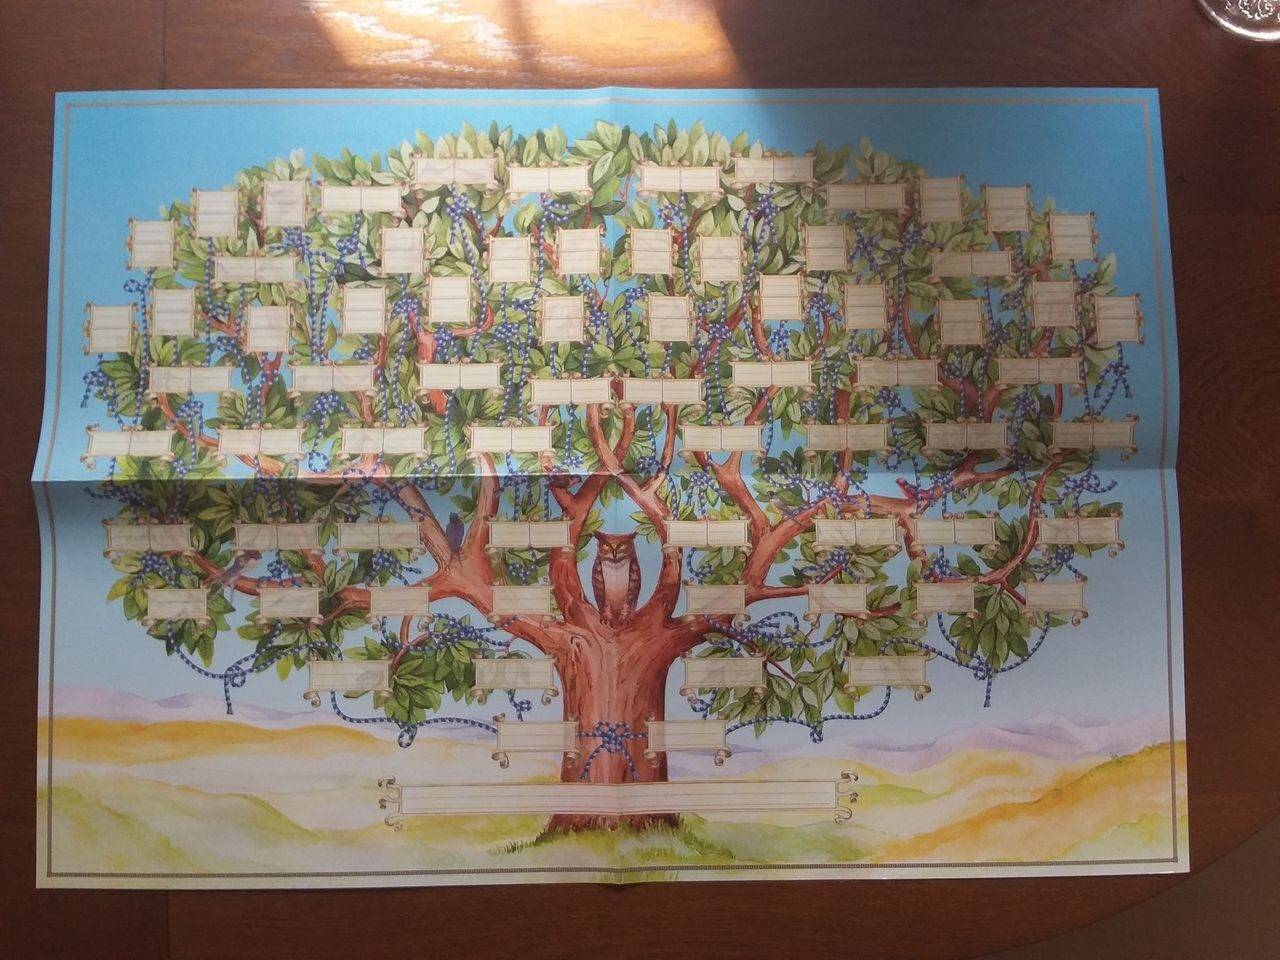 Семейное дерево своими руками как создать или нарисовать семейное дерево на компьютере онлайн бесплатно и распечатать